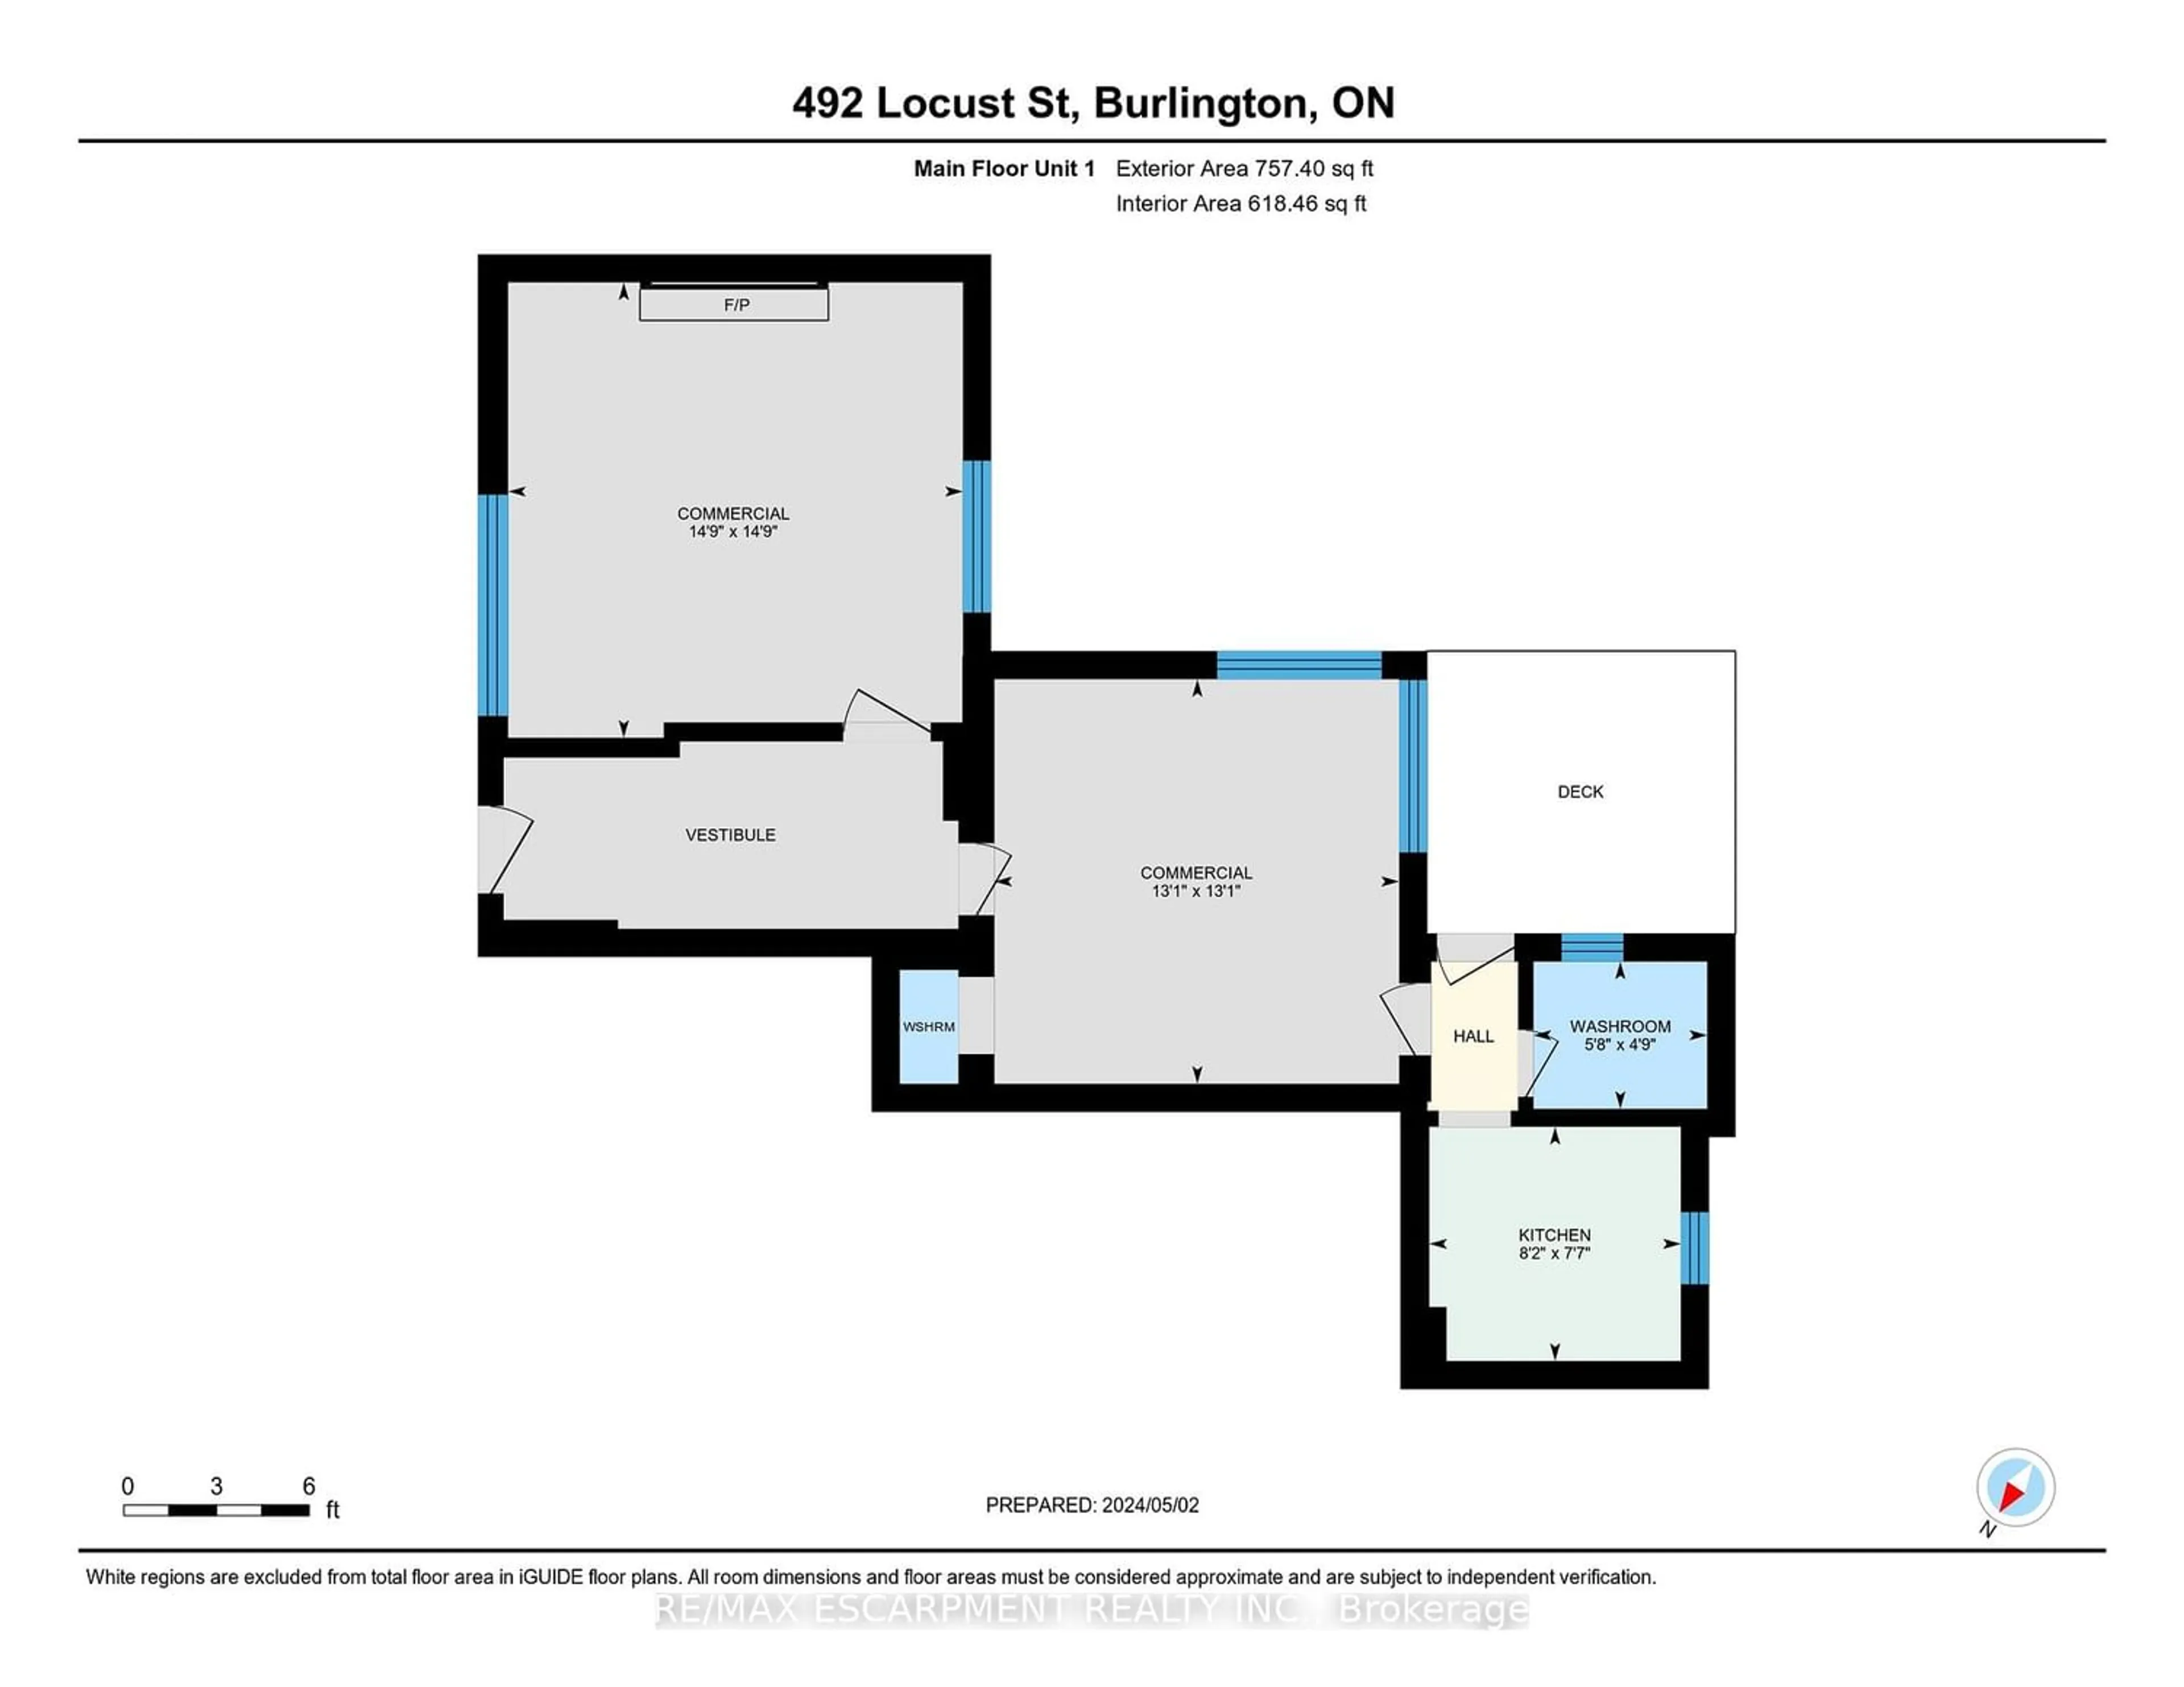 Floor plan for 492 Locust St, Burlington Ontario L7S 2R1